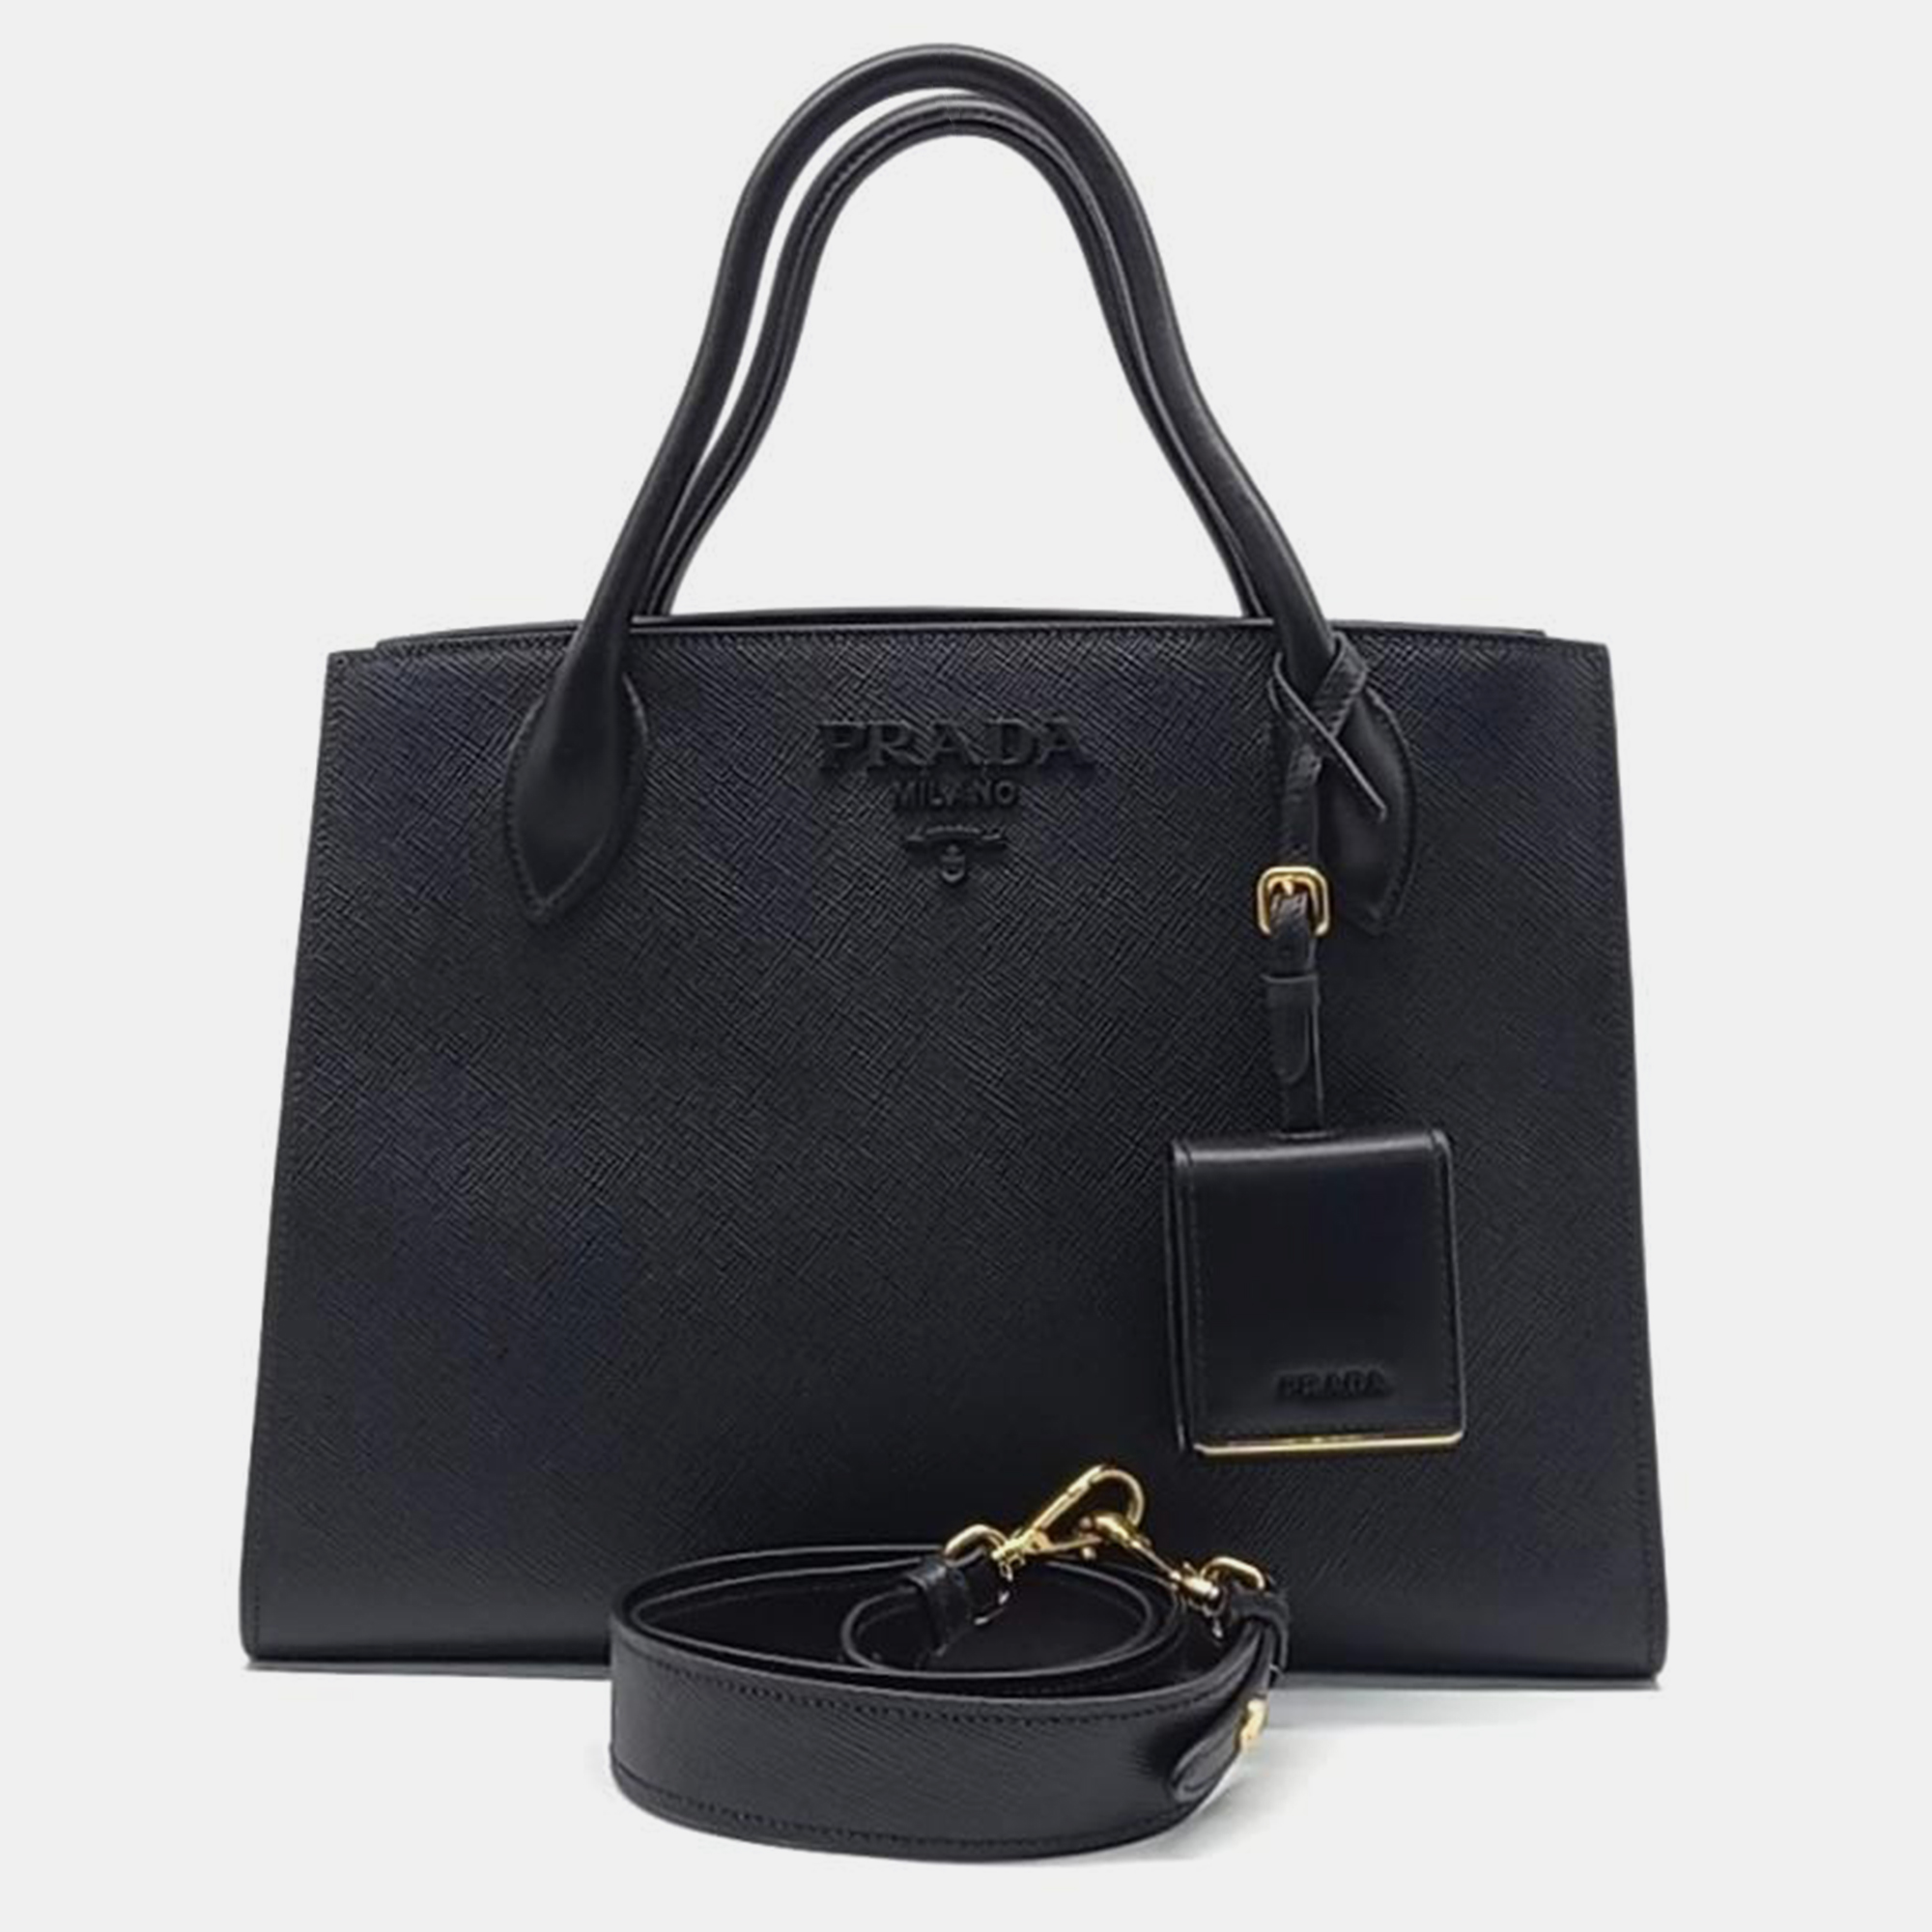 

Prada Saffiano Monochrome Bag (1BA155), Black